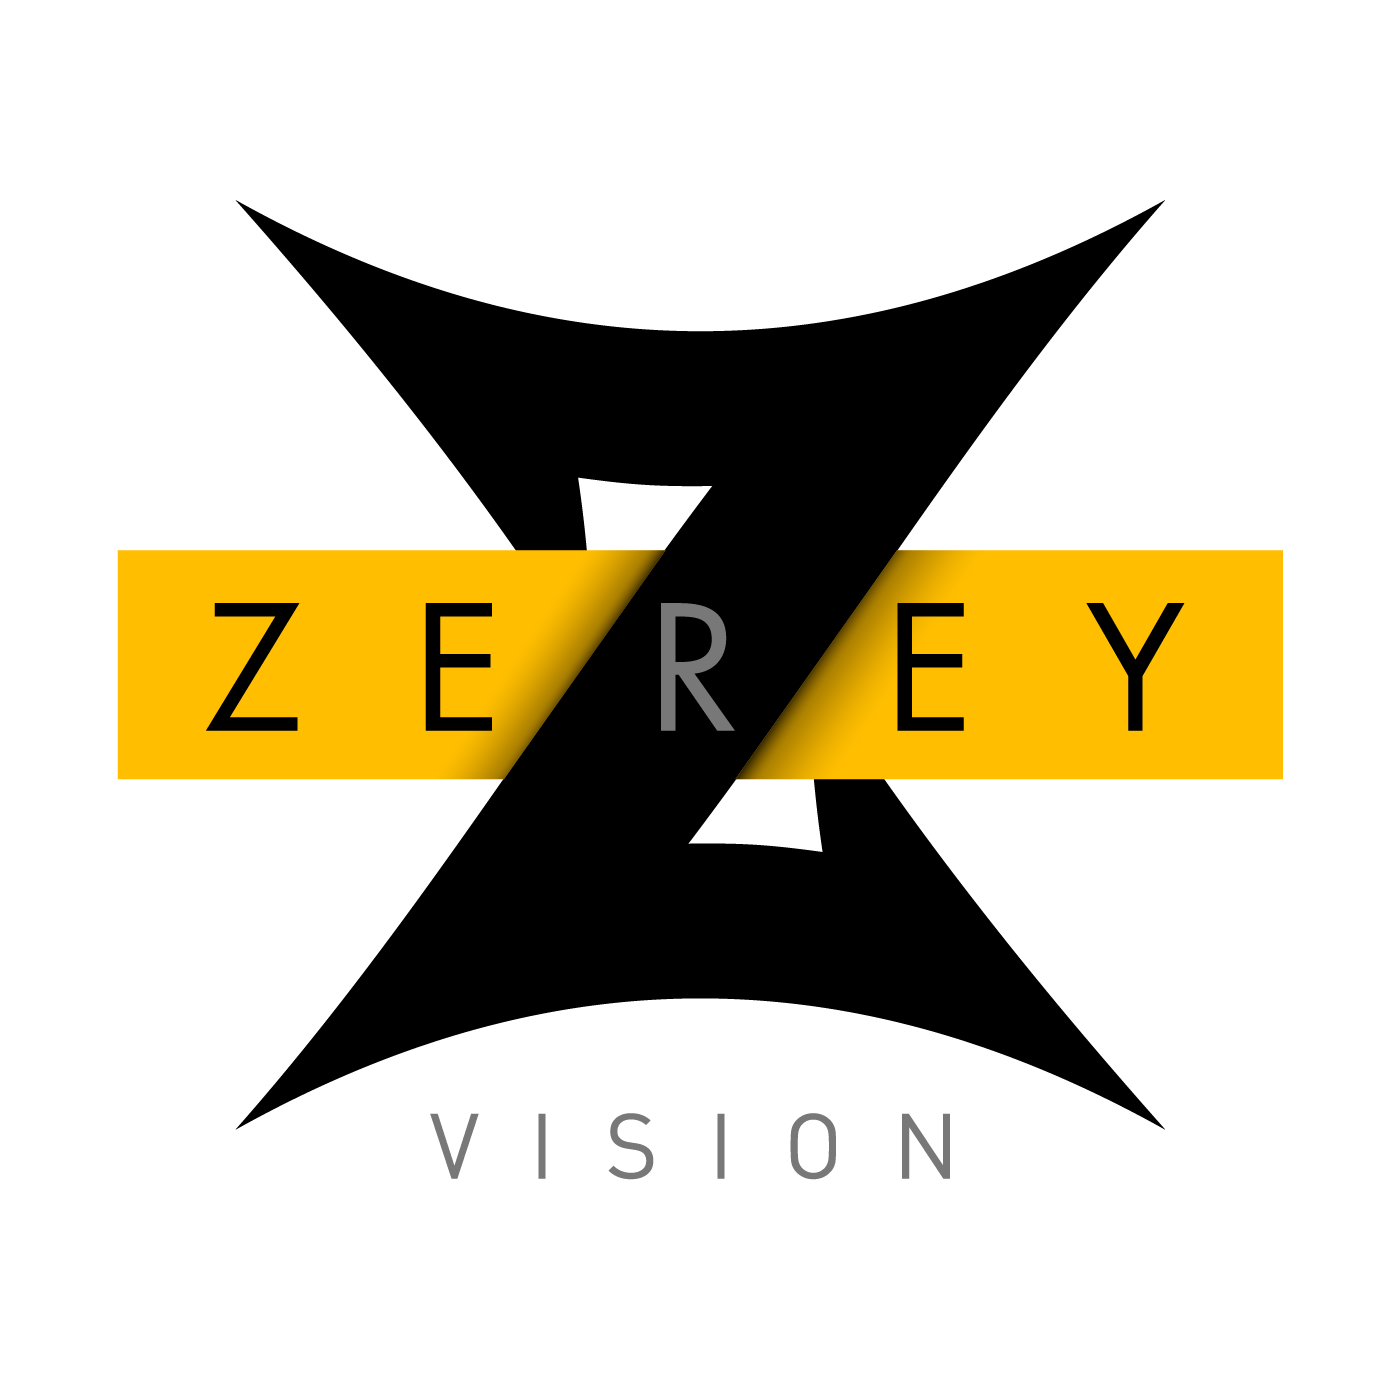 ZEREY VISION